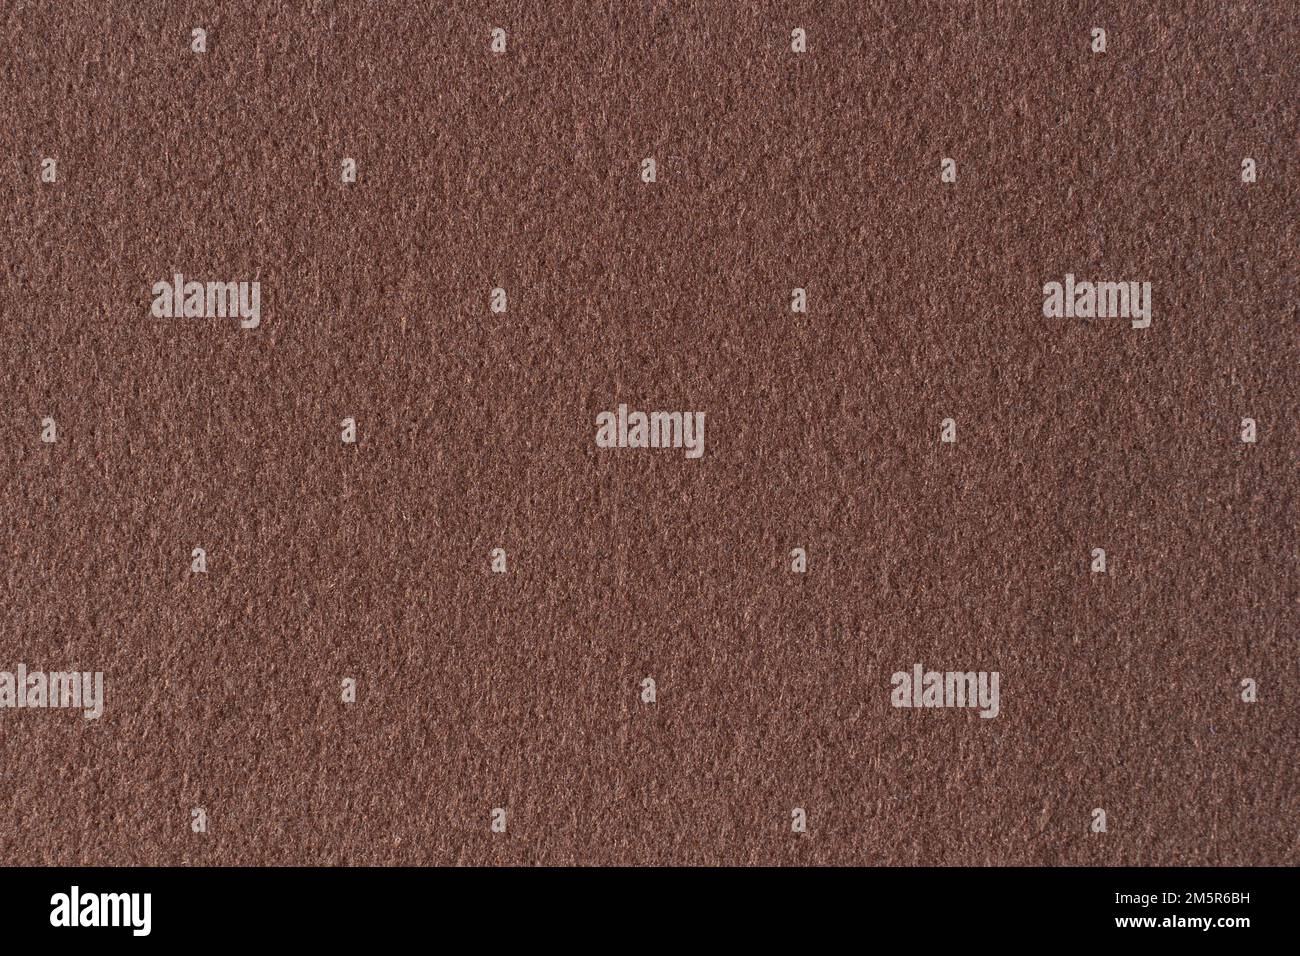 Braune Farbe Filz Textil Stoff Material Textur Hintergrund. Abstrakter monochromer dunkelbrauner Hintergrund Stockfoto